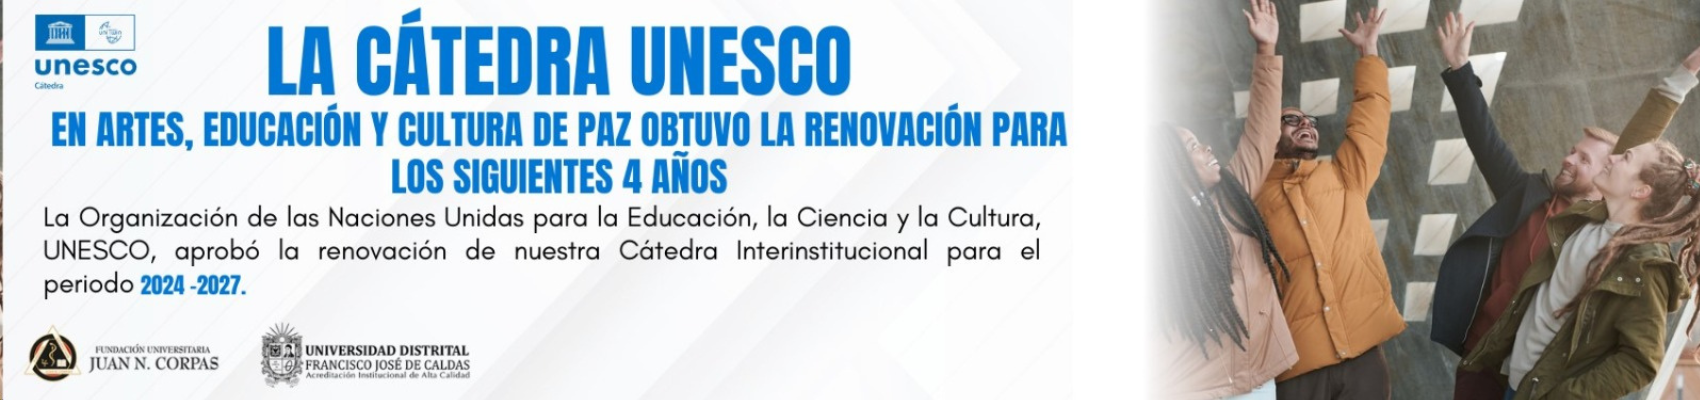 Imagen publicacion RENOVACIÓN CÁTEDRA UNESCO EN ARTES, EDUCACIÓN Y CULTURA DE PAZ HASTA EL 2027